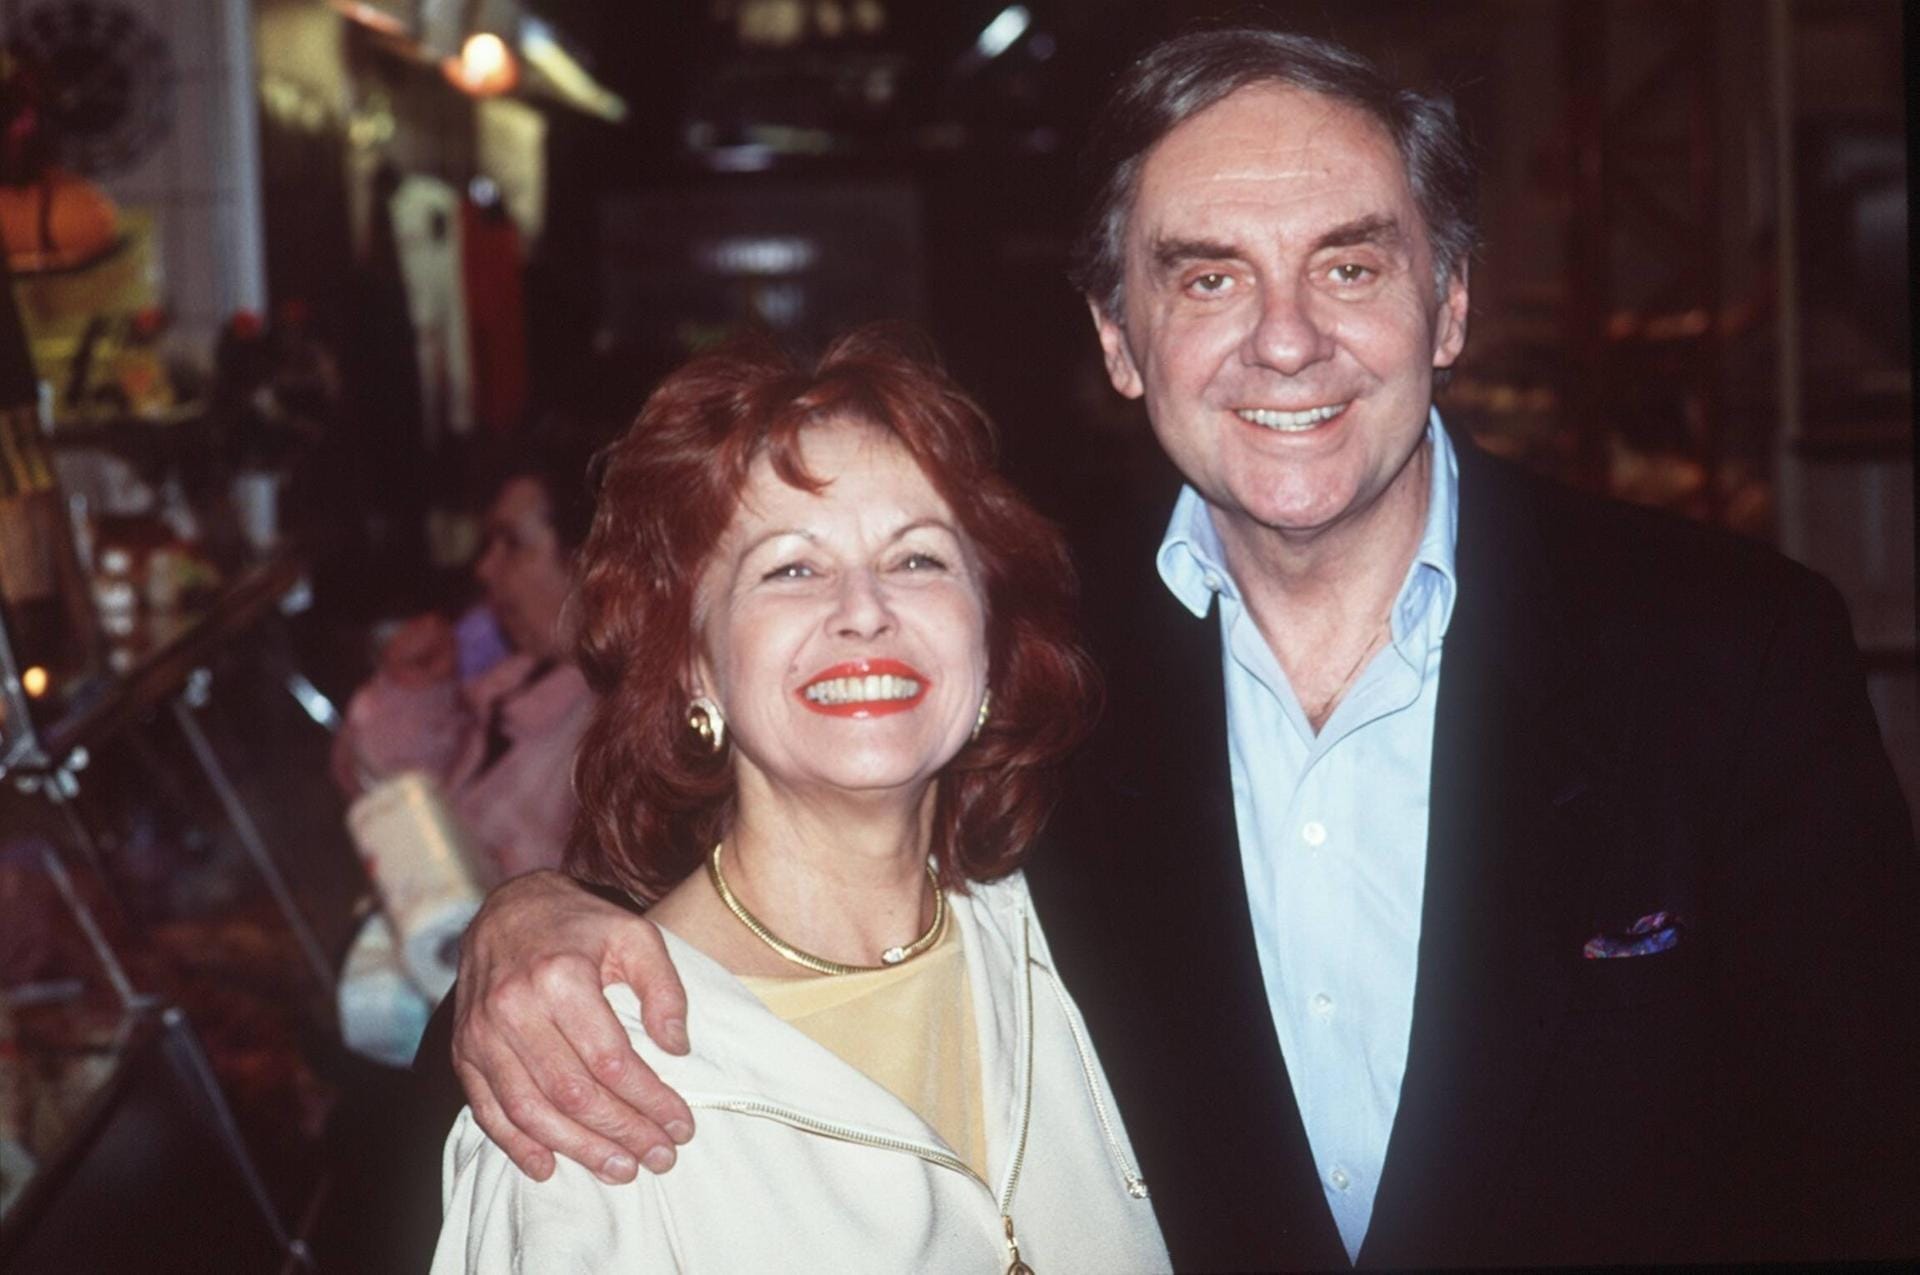 Brigitte Grothum und Harald Juhnke: Die beiden spielten zusammen in "Drei Damen vom Grill".